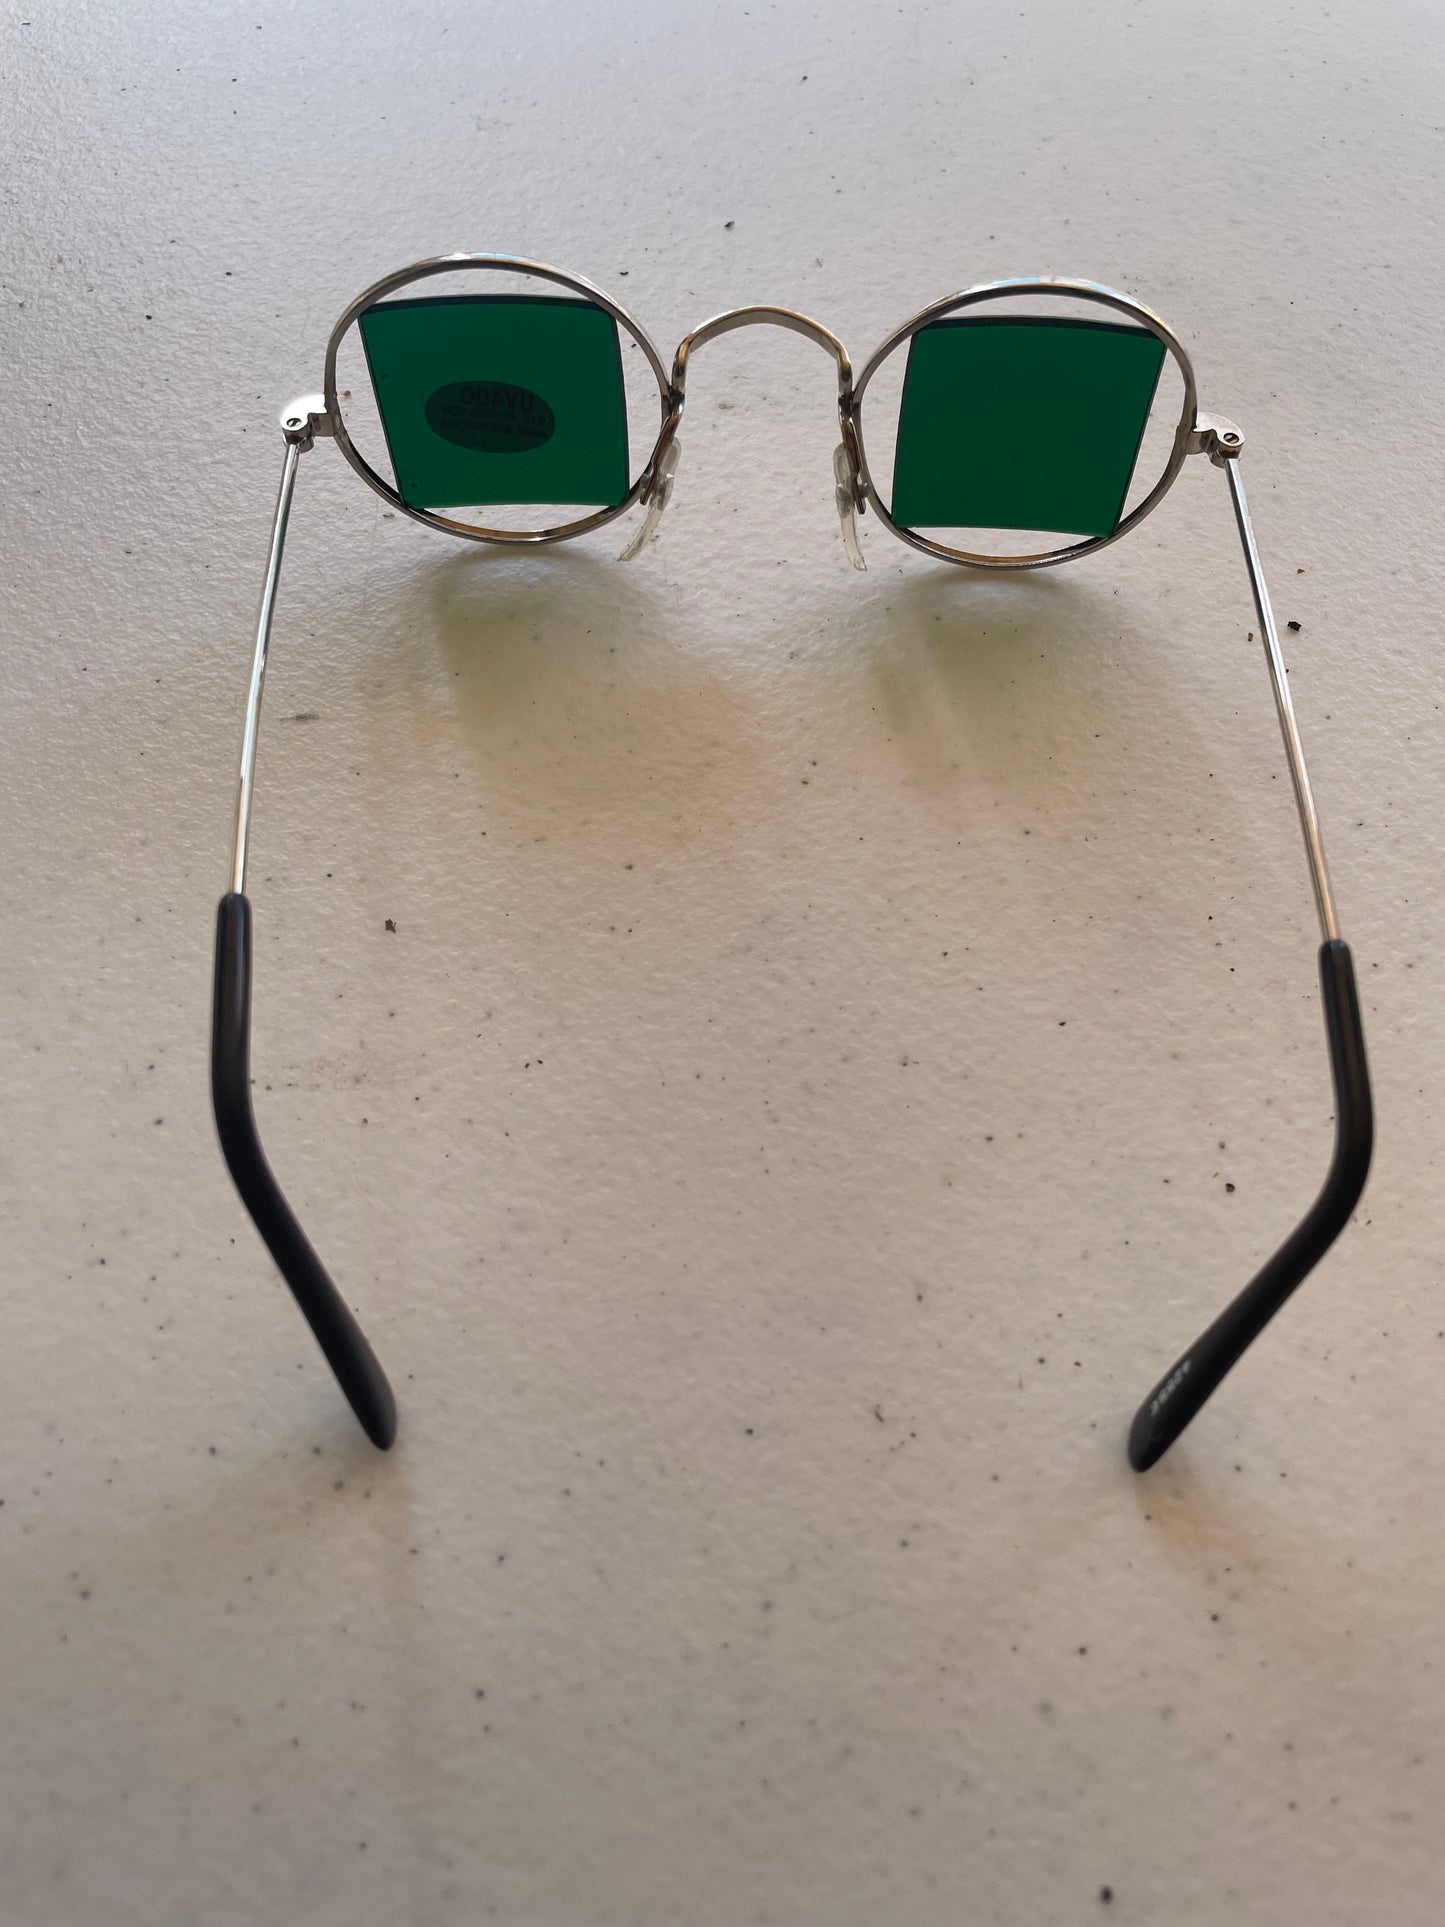 Vintage Sunglassess Squared Green Lenses